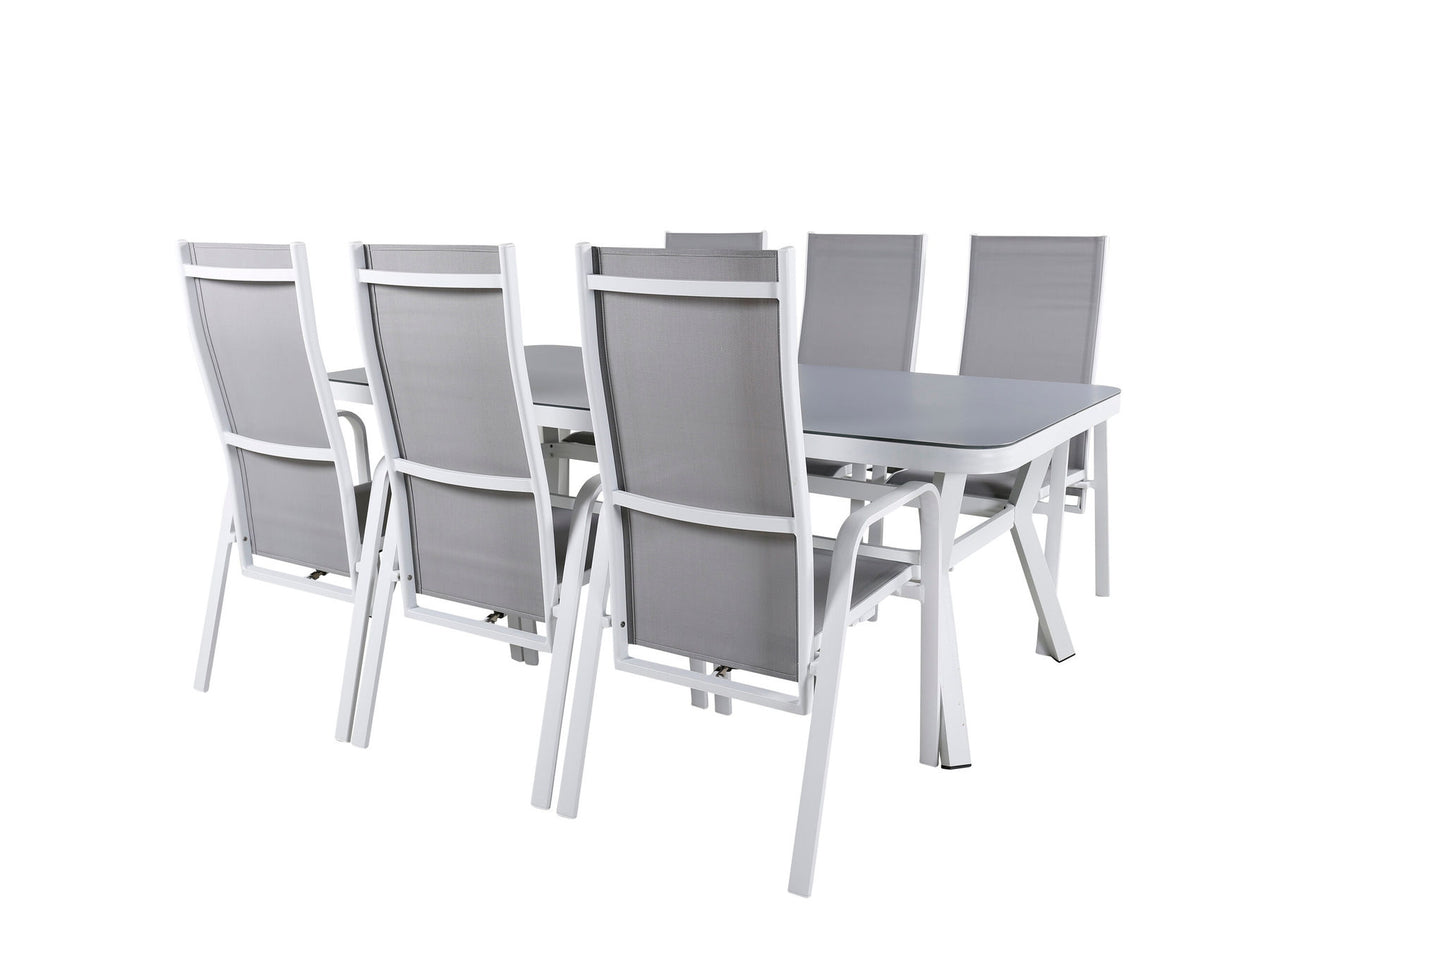 Virya - Spisebord, Hvid Alu / Grå glas - big table+Copacabana Recliner Stol - Hvid/Grå